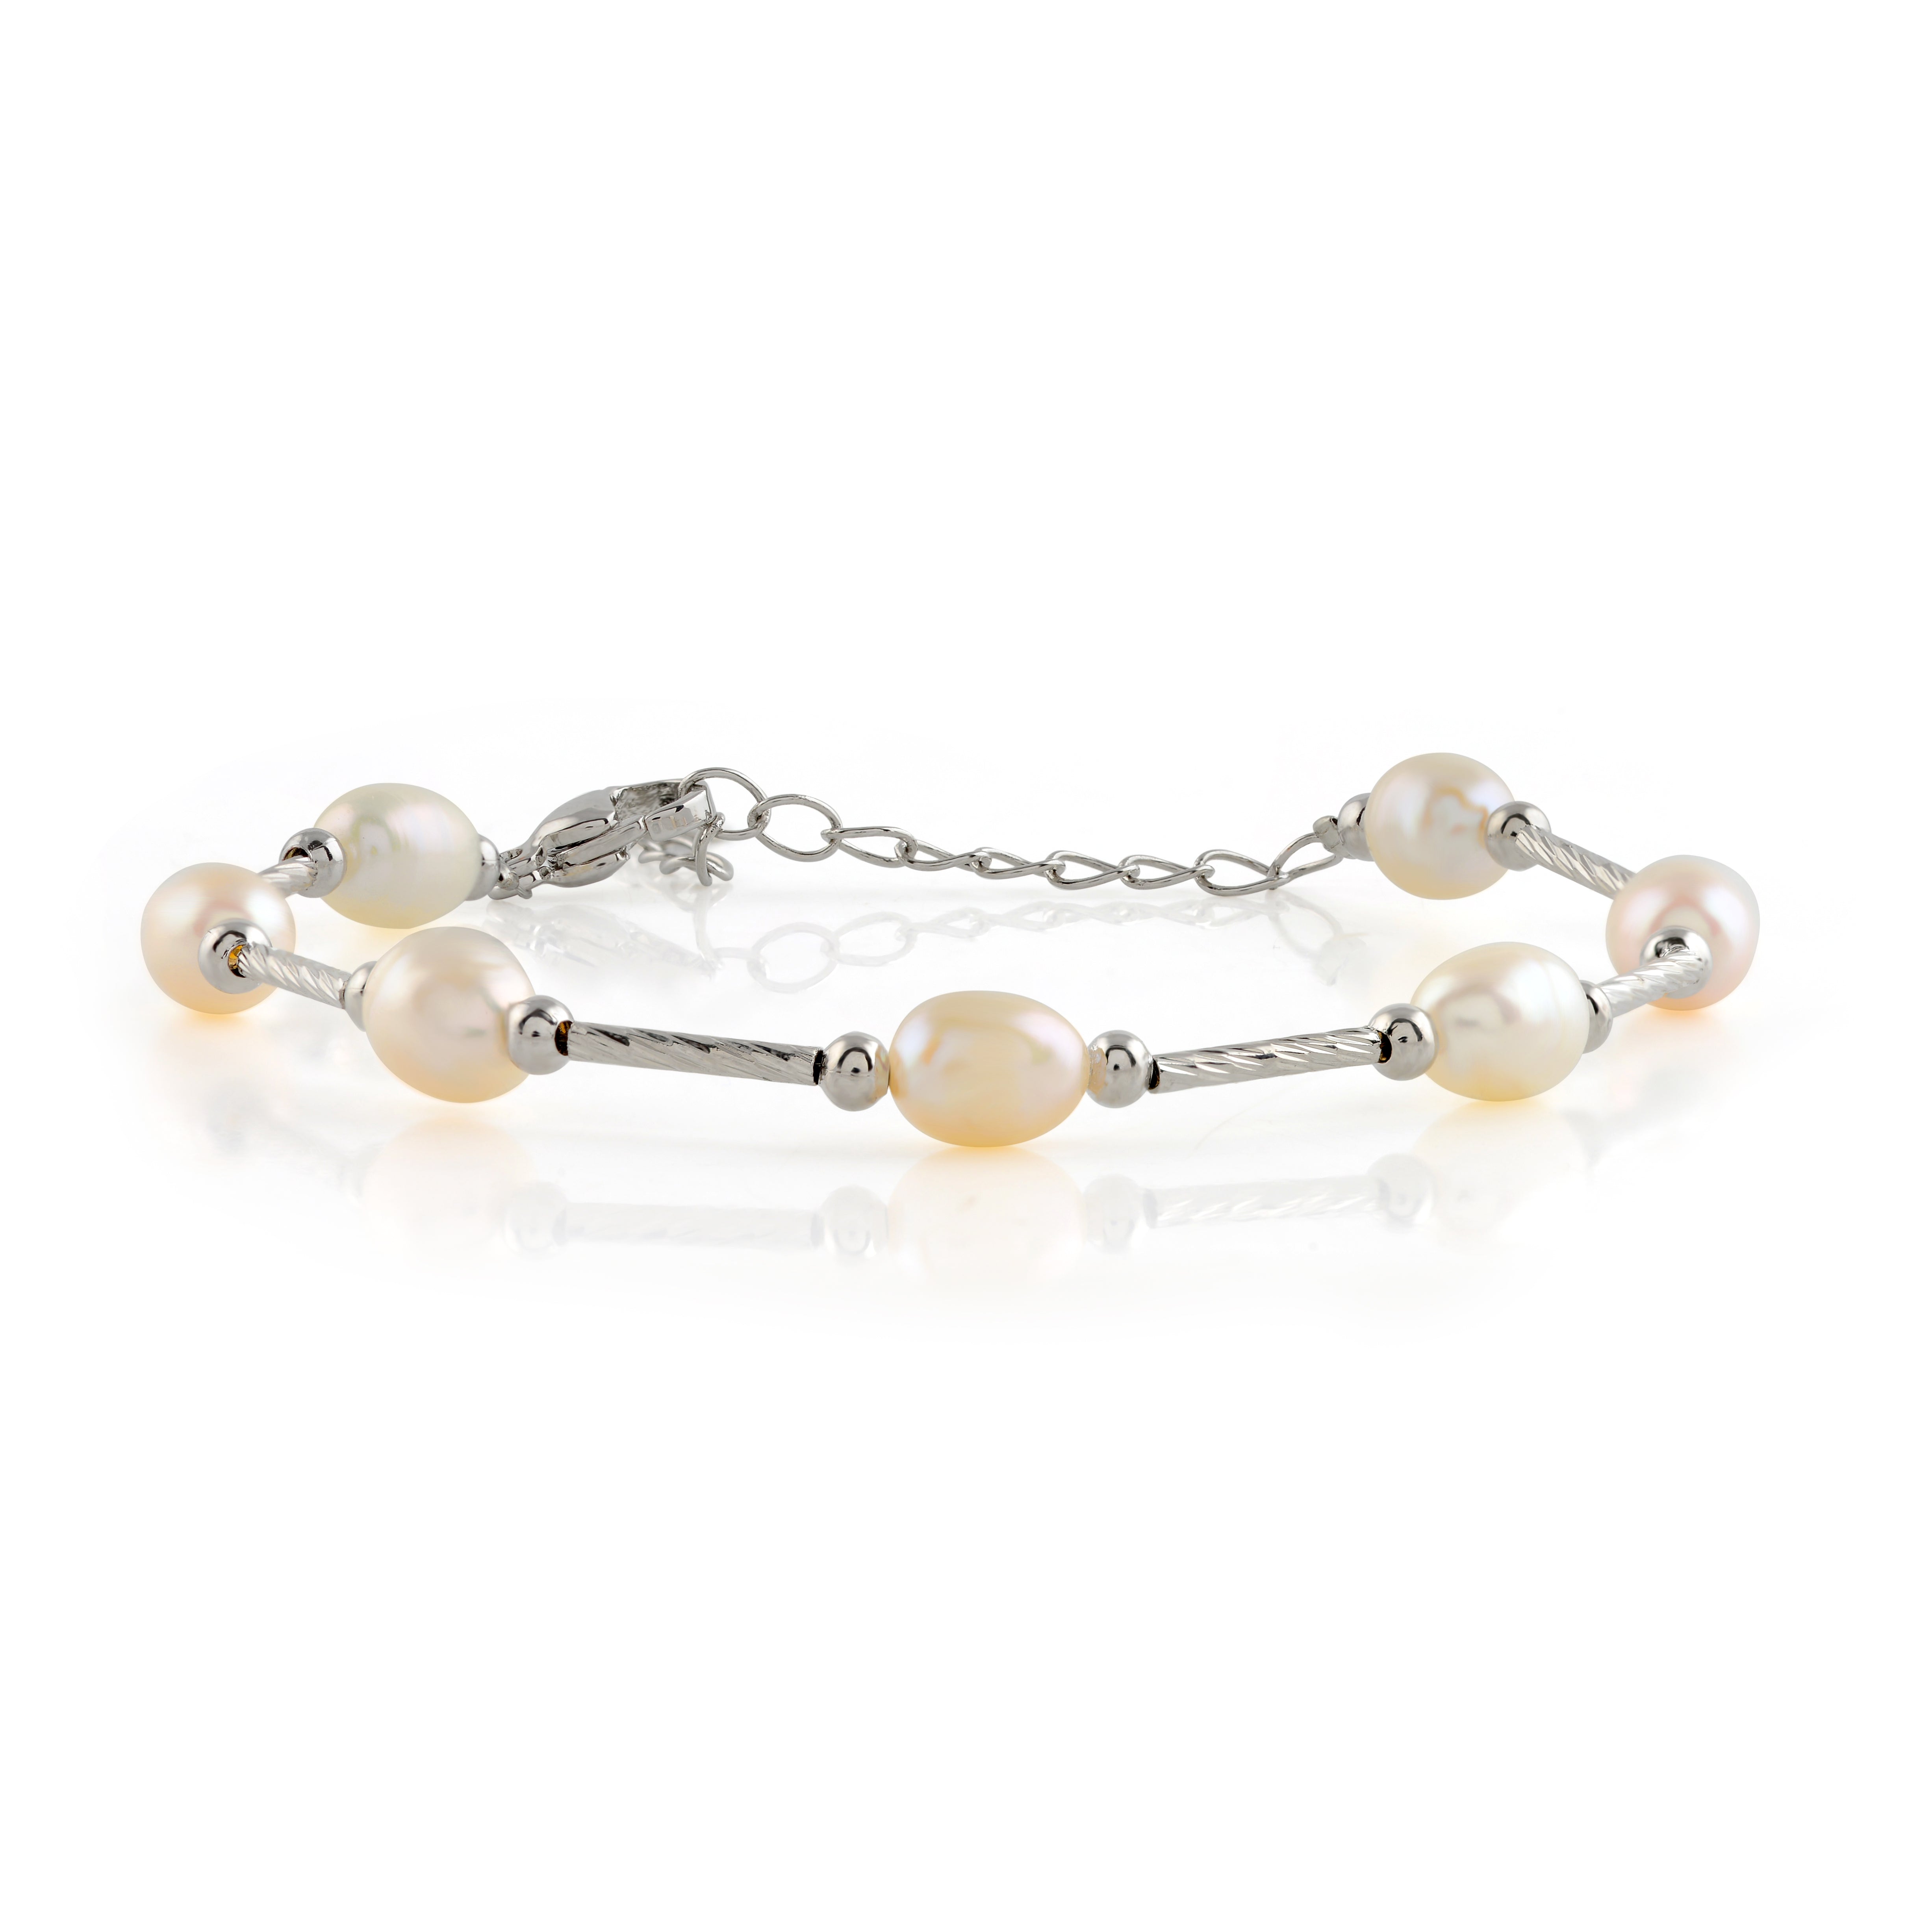 Single strand pearl bracelet